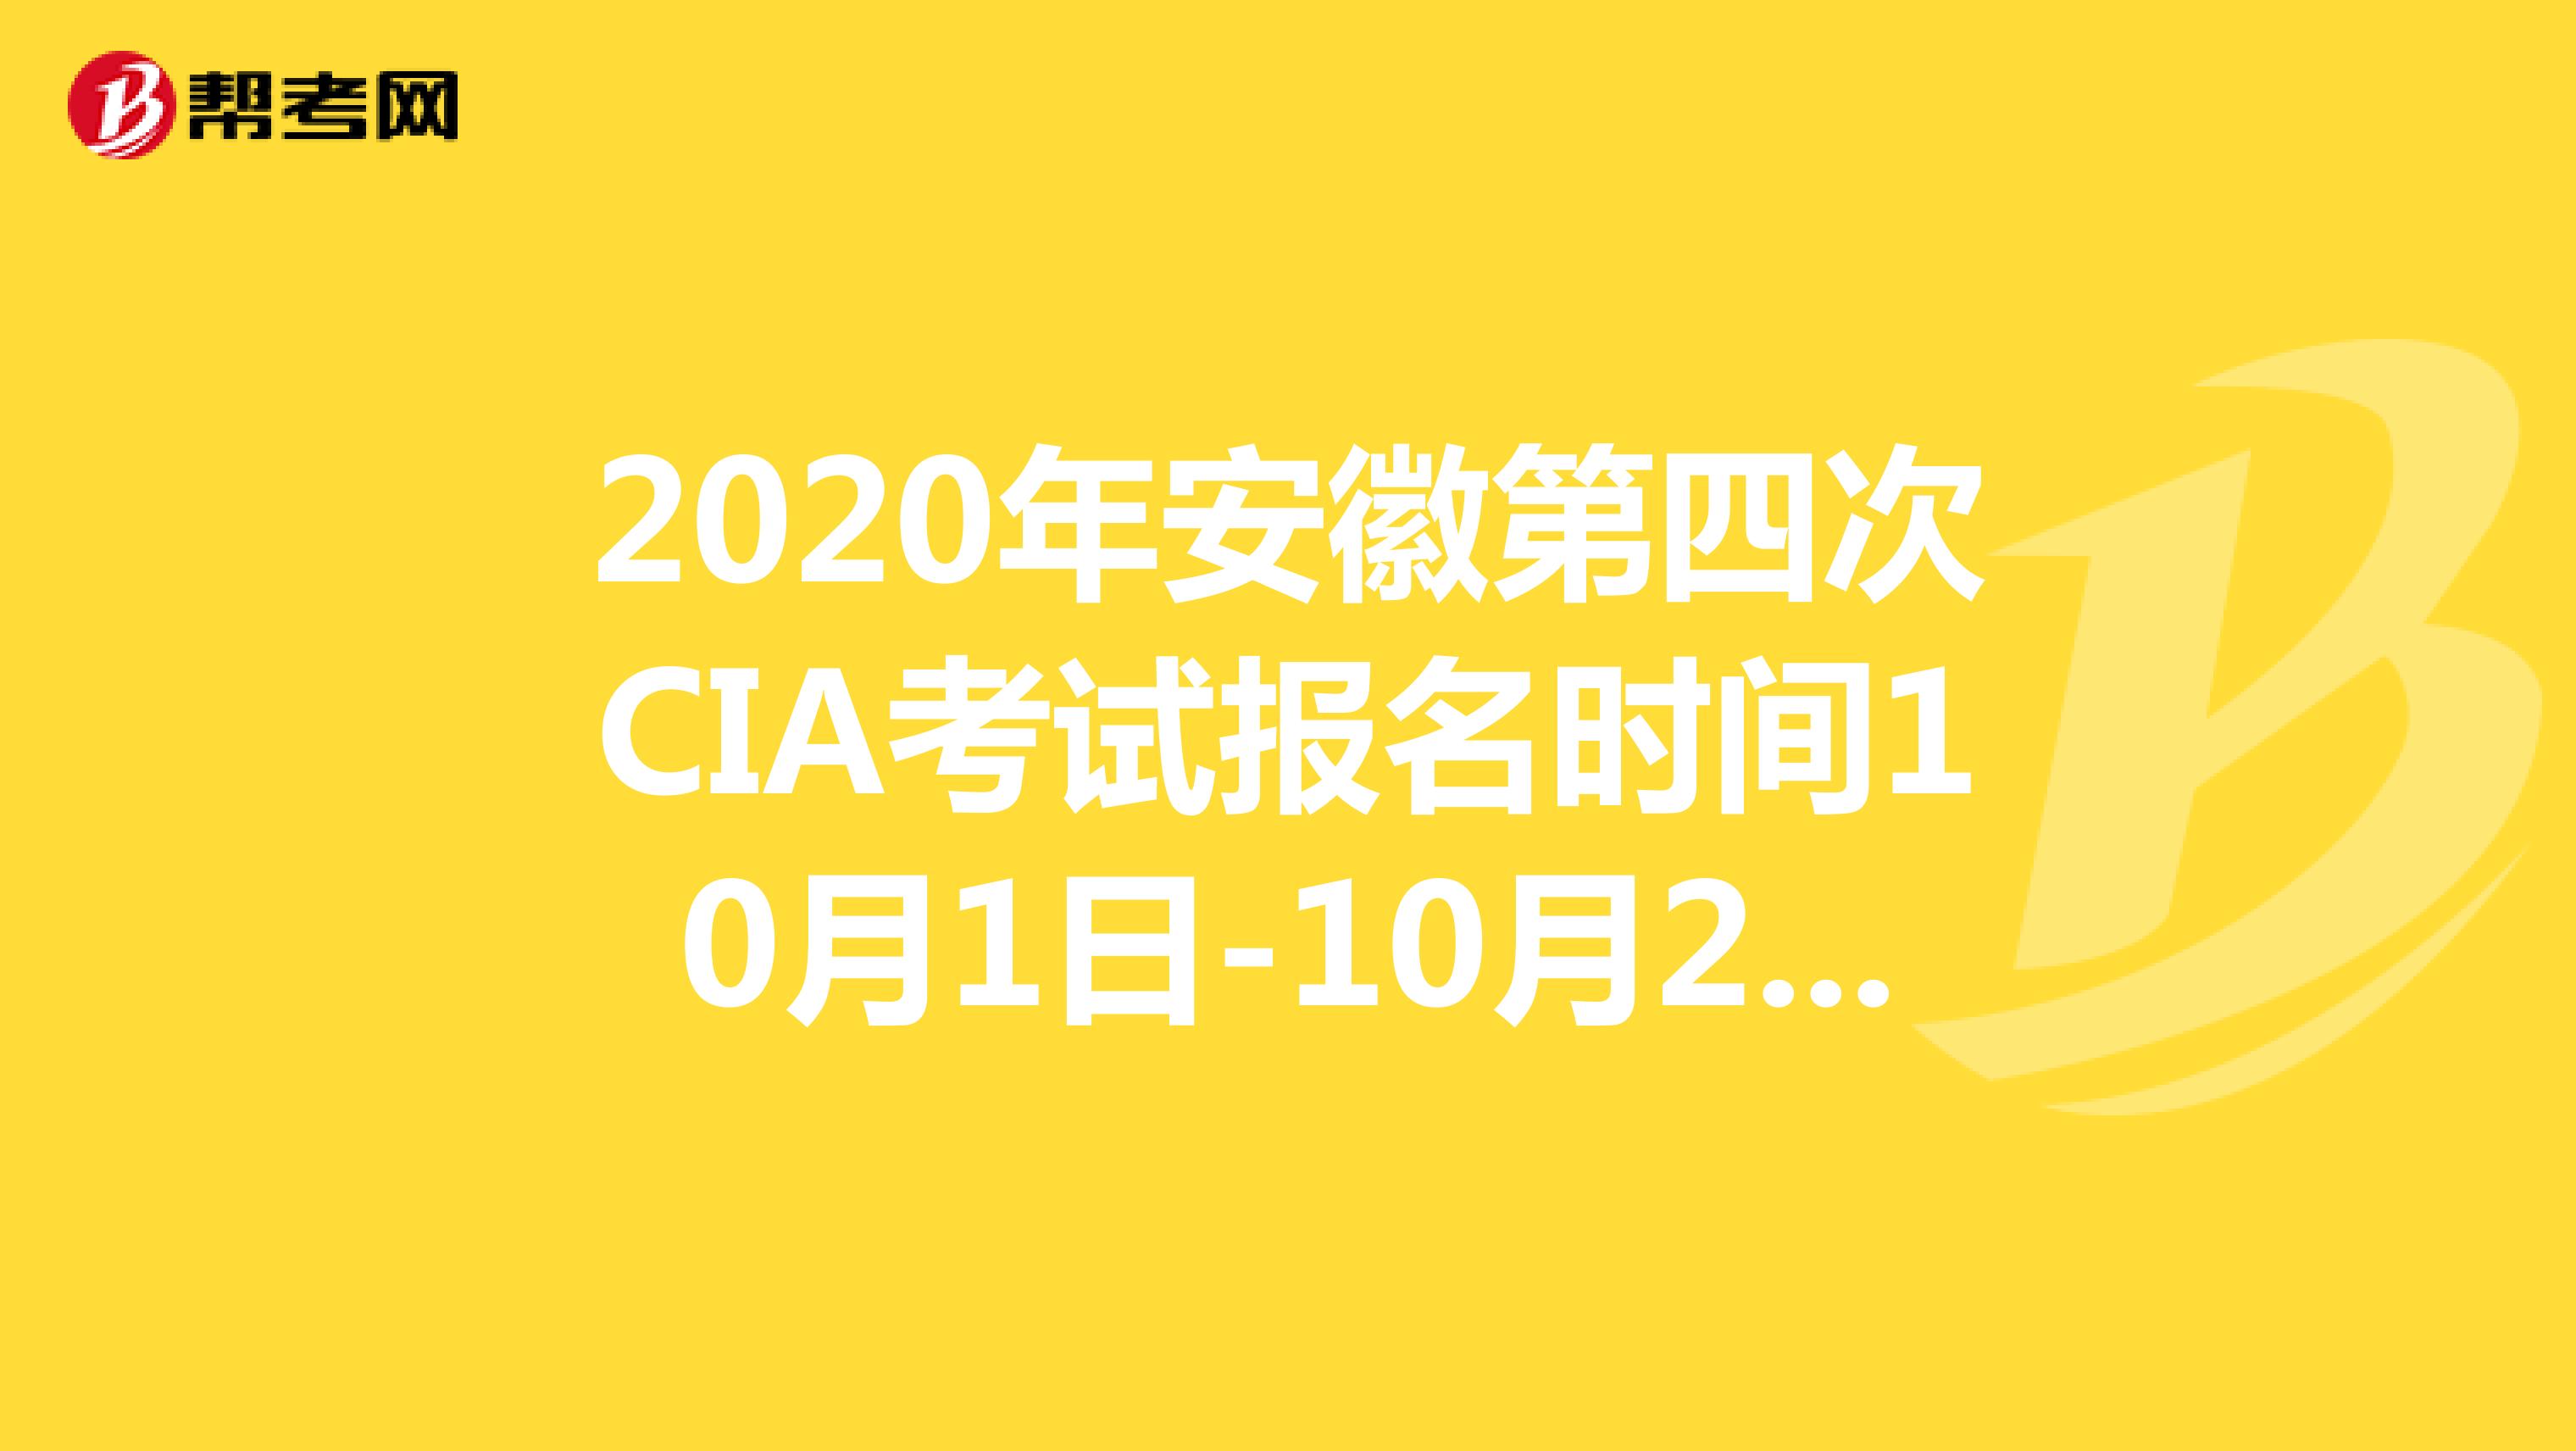 2020年安徽第四次CIA考试报名时间10月1日-10月20日